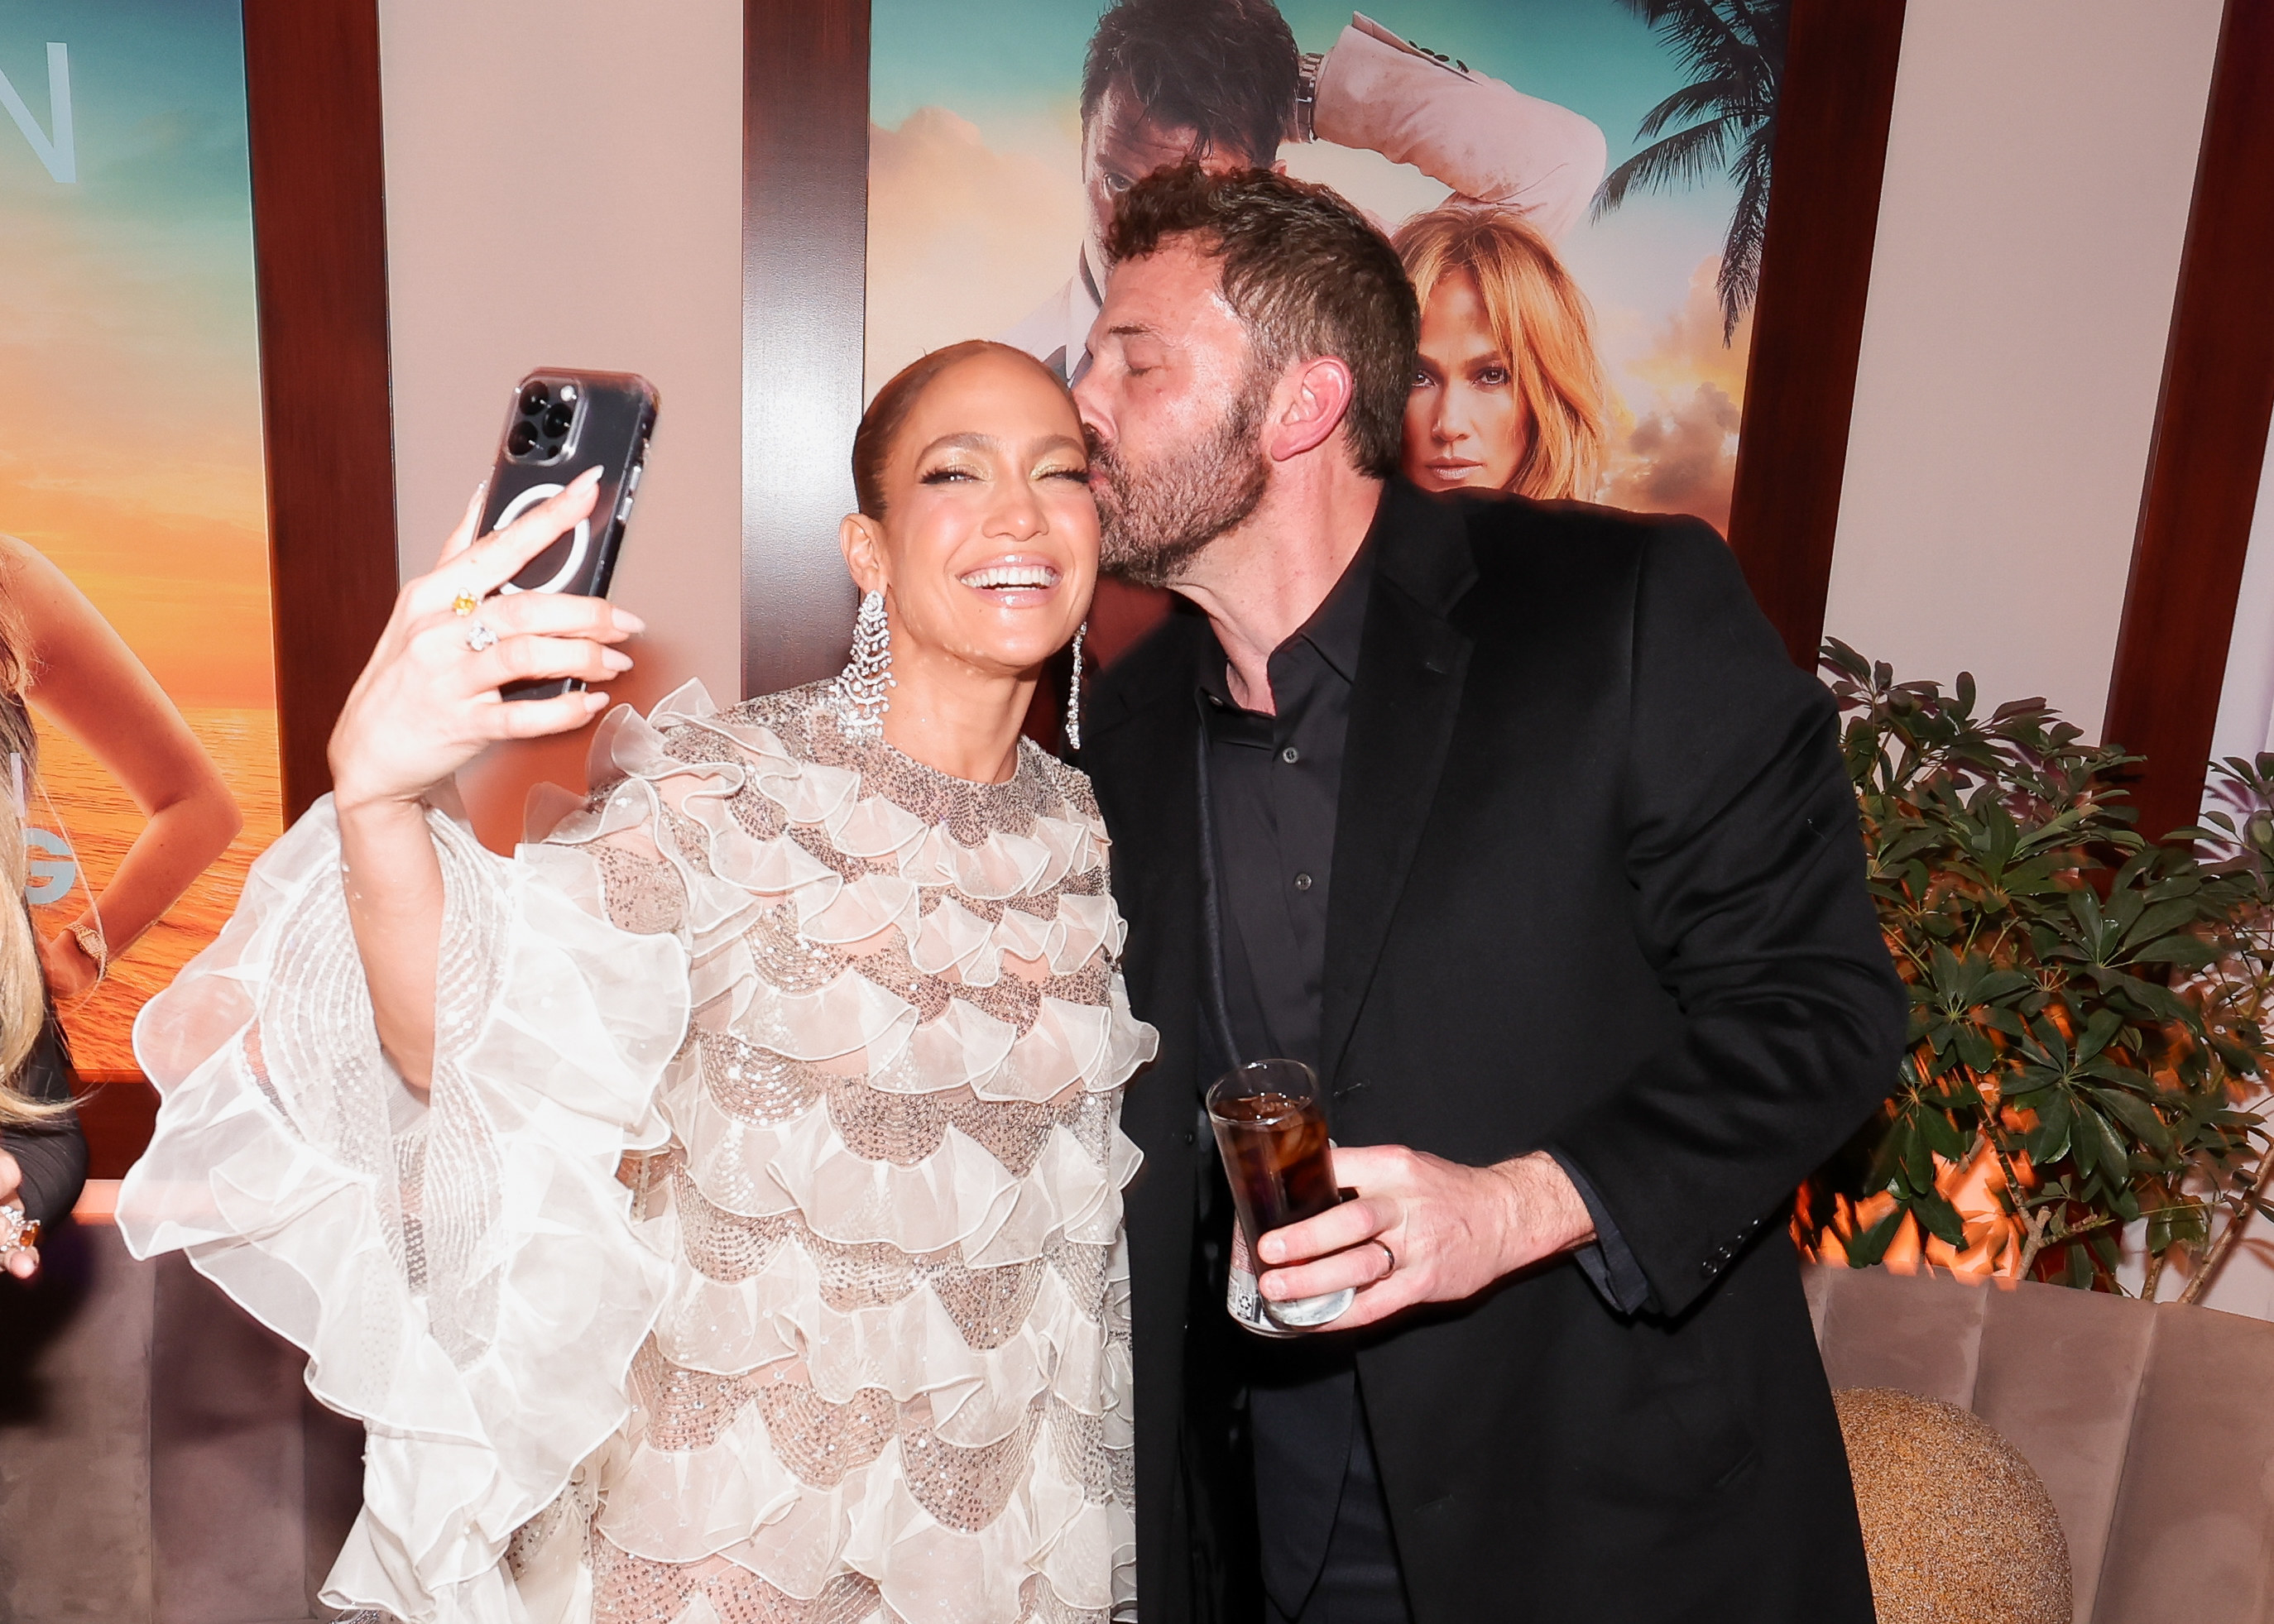 Ben kisses Jennifer on the cheek as she take a selfie